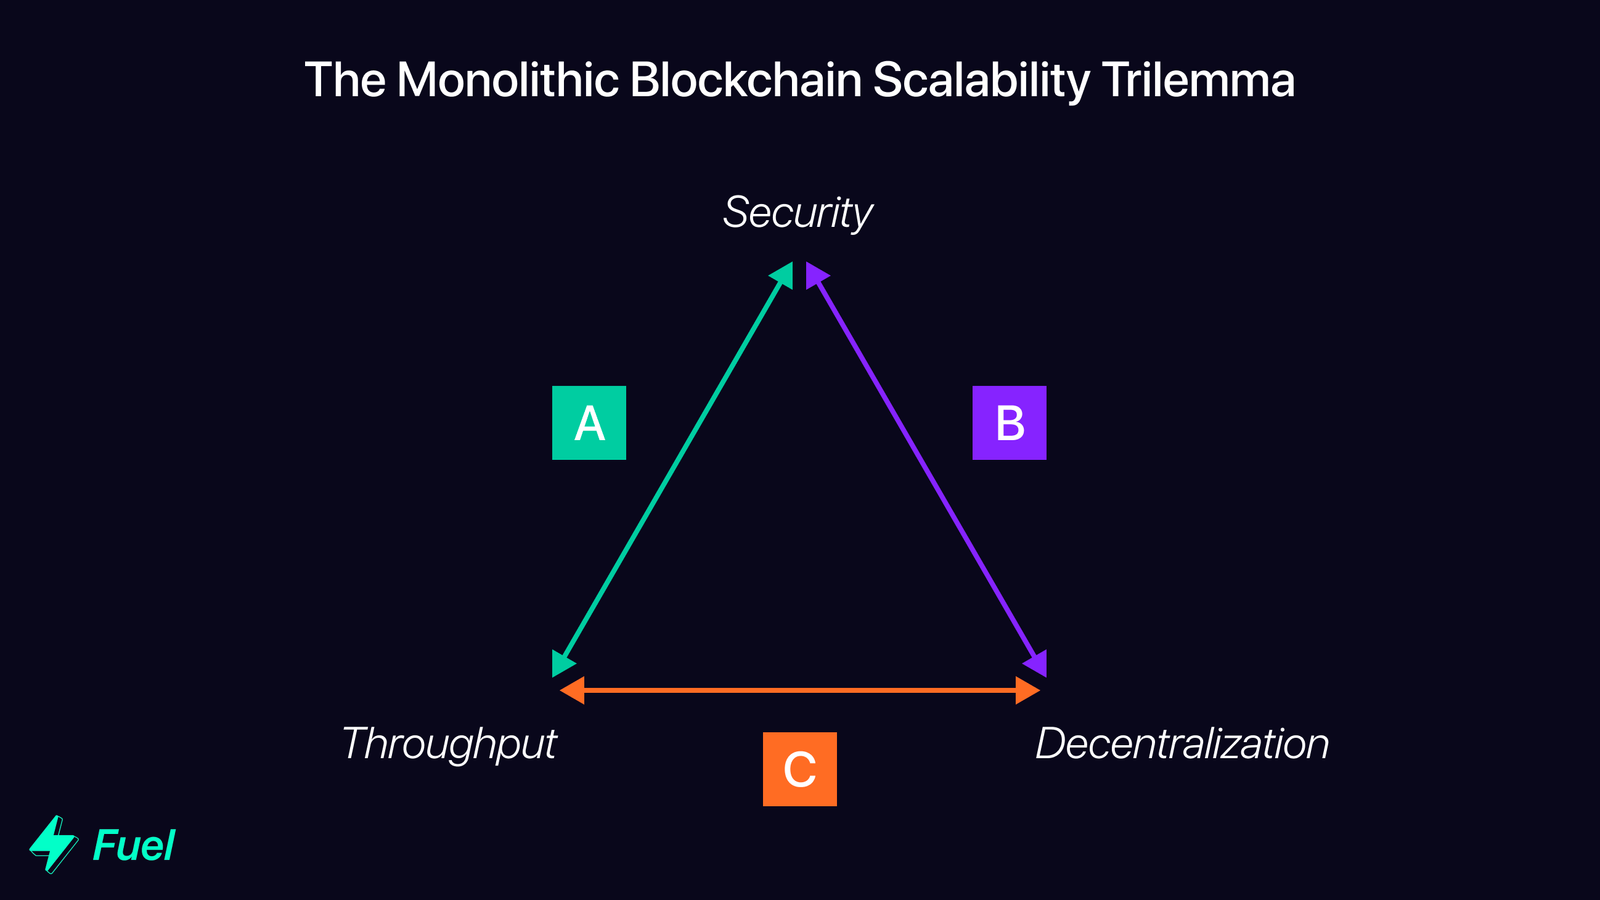 La plupart des blockchains monolithiques se positionne dans le groupe A, B, ou C, sacrifiant ainsi l'une des trois composante essentielles